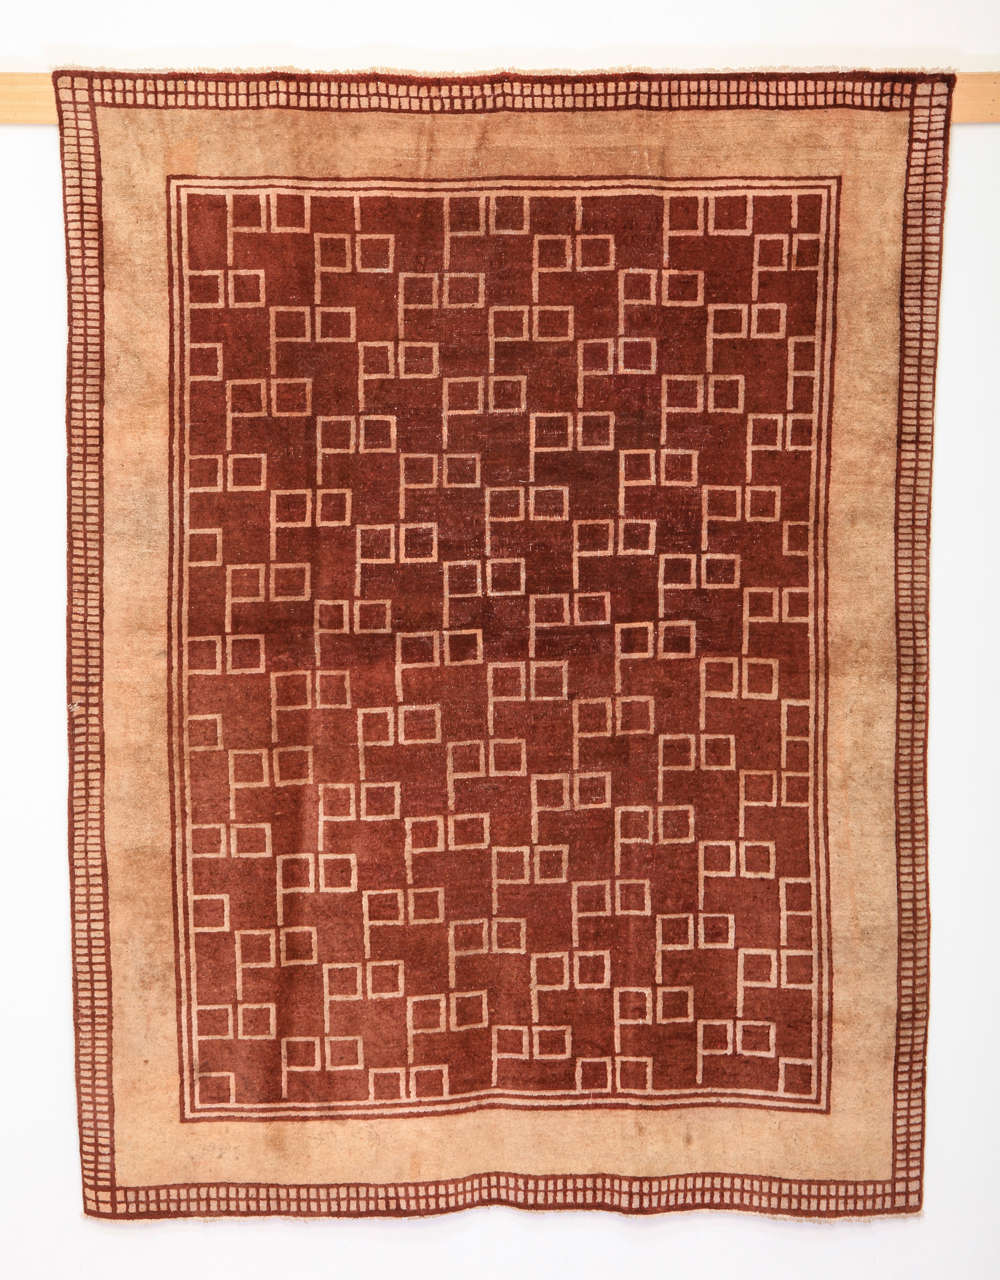 Eine seltene und ungewöhnliche Teppich gewebt in zwei Farben mit einem all-over-Muster von quadratischen Geräten. Obwohl sie ursprünglich aus China stammen, wurden Teppiche dieser Art von den europäischen Designbewegungen des 20. Jahrhunderts